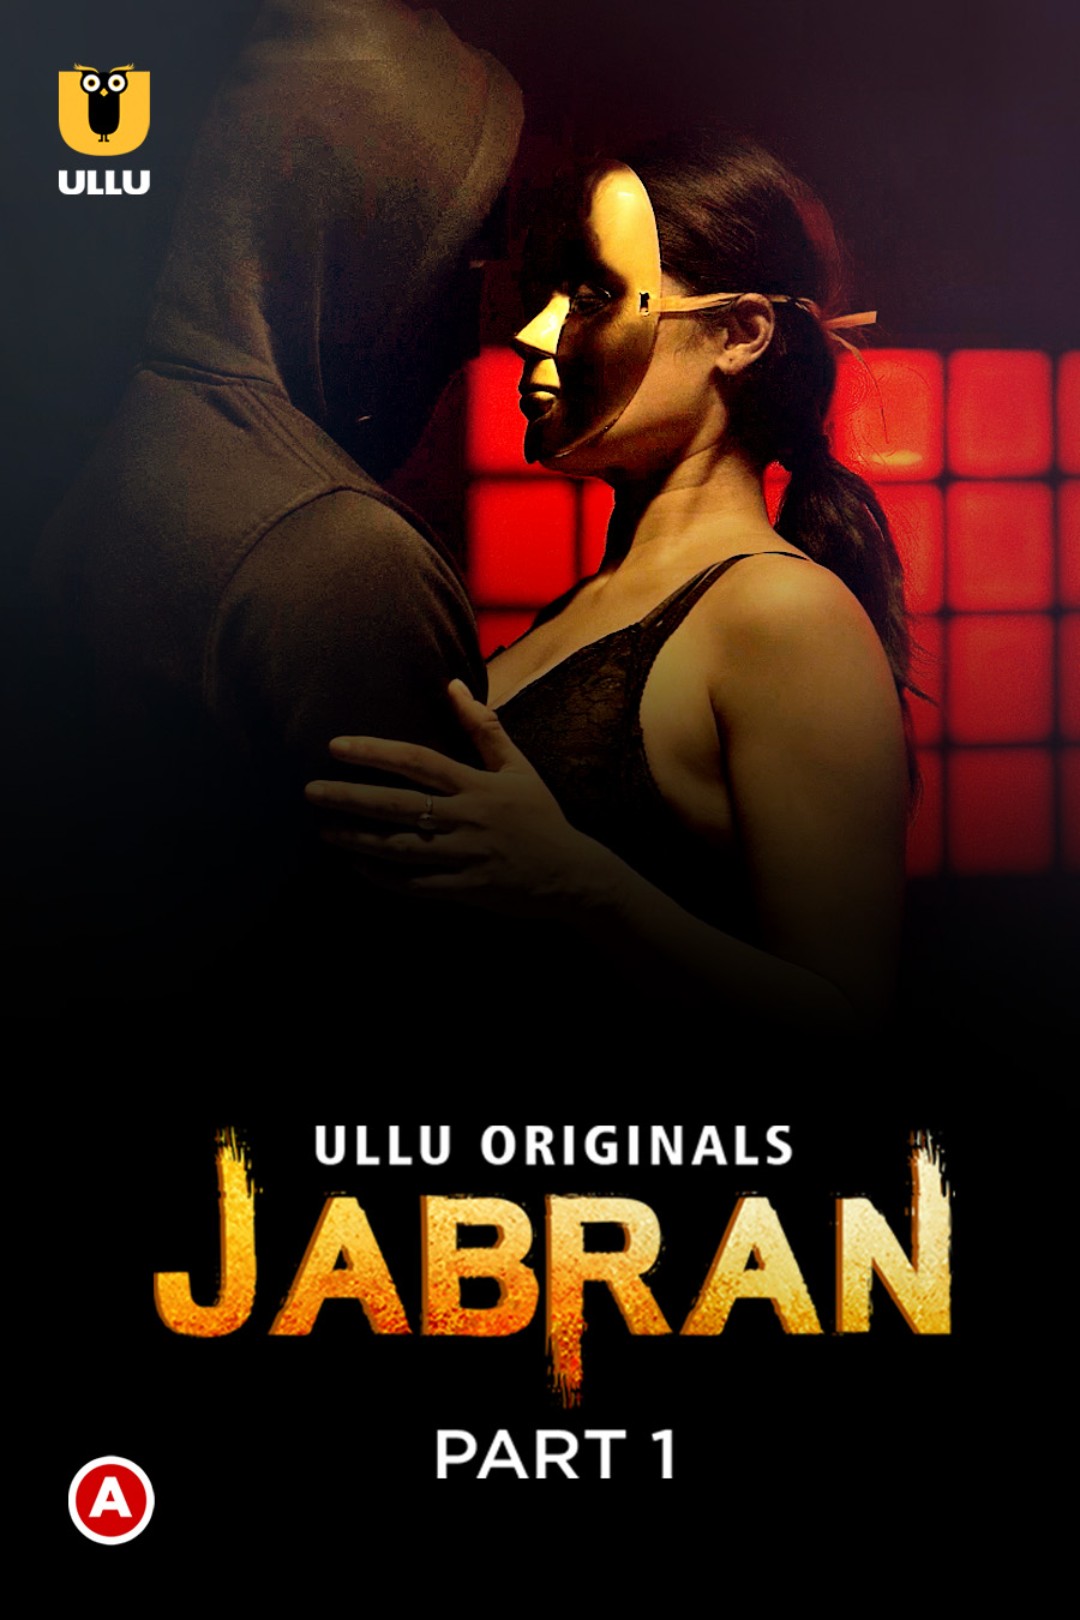 Download [18+] Jabran Part 1 (2022) Hindi Ullu Web Series HDRip 1080p [1.5GB] | 720p [700MB] | 480p [300MB] download